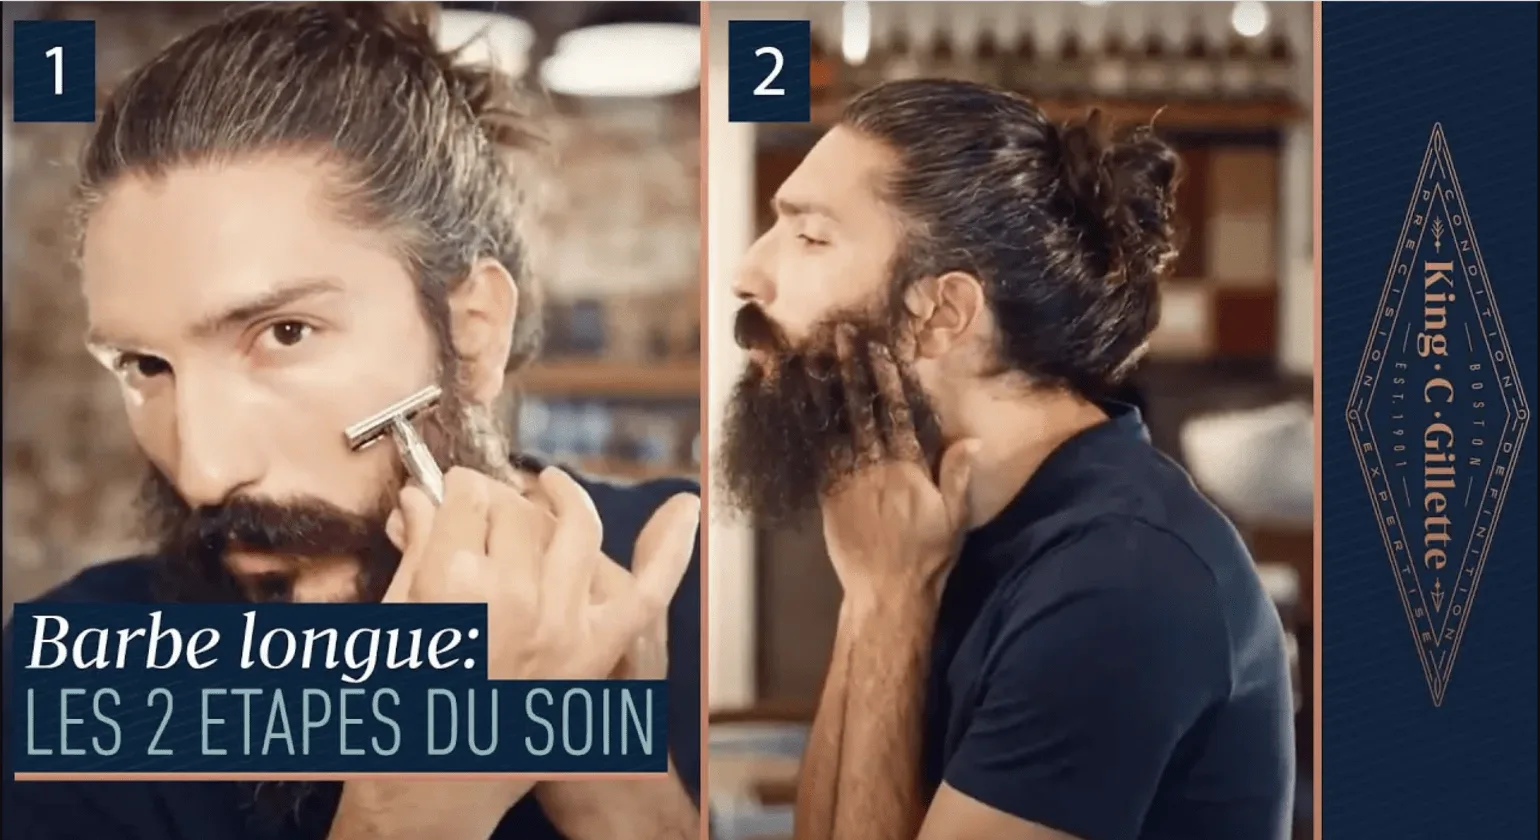 Tutoriel sur comment prendre soin de sa longue barbe